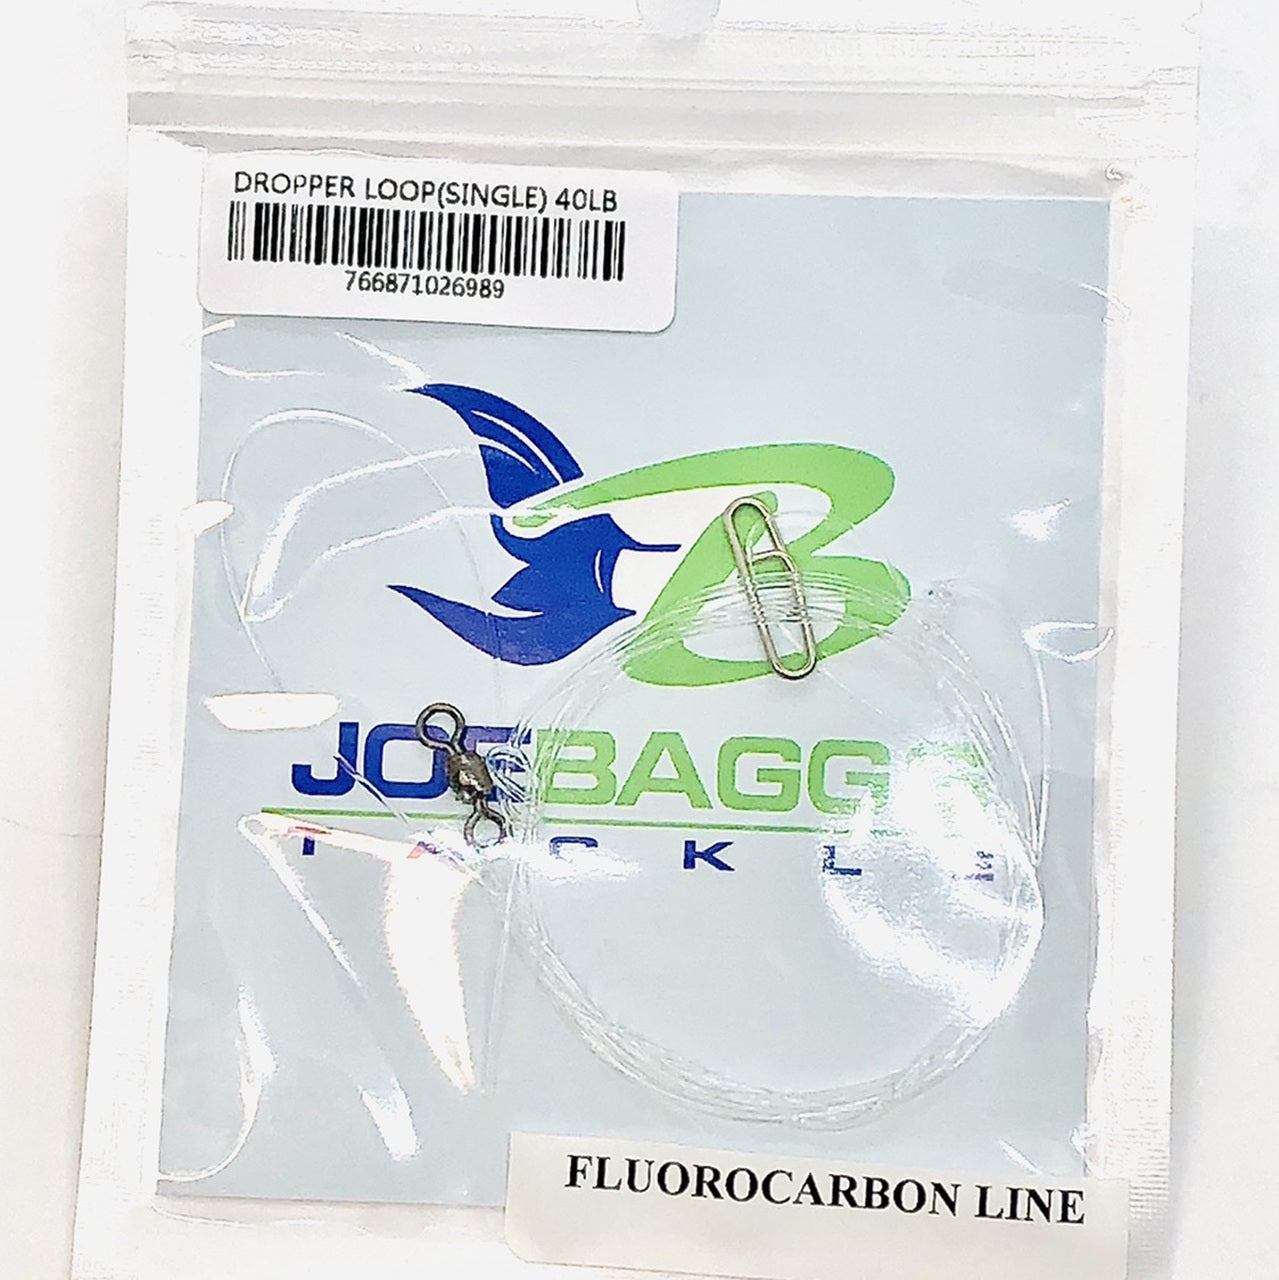 JoeBaggs - Single Dropper Loop Pre-Tied Rigs